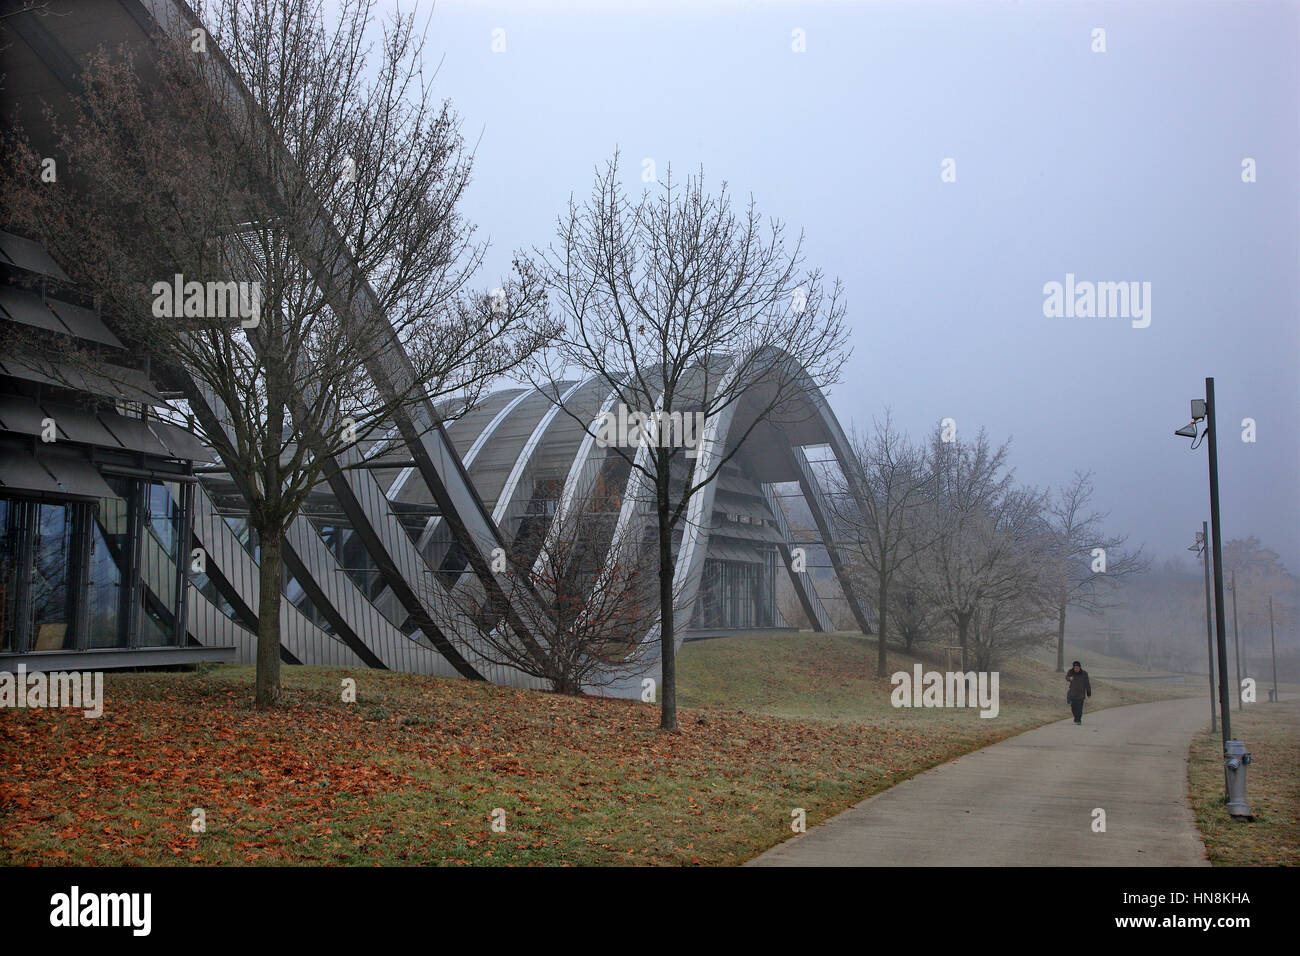 Das Zentrum Paul Klee ist ein Museum widmet sich des Künstlers Paul Klee, befindet sich in Bern in der Schweiz und von dem italienischen Architekten Renzo Piano entworfen Stockfoto